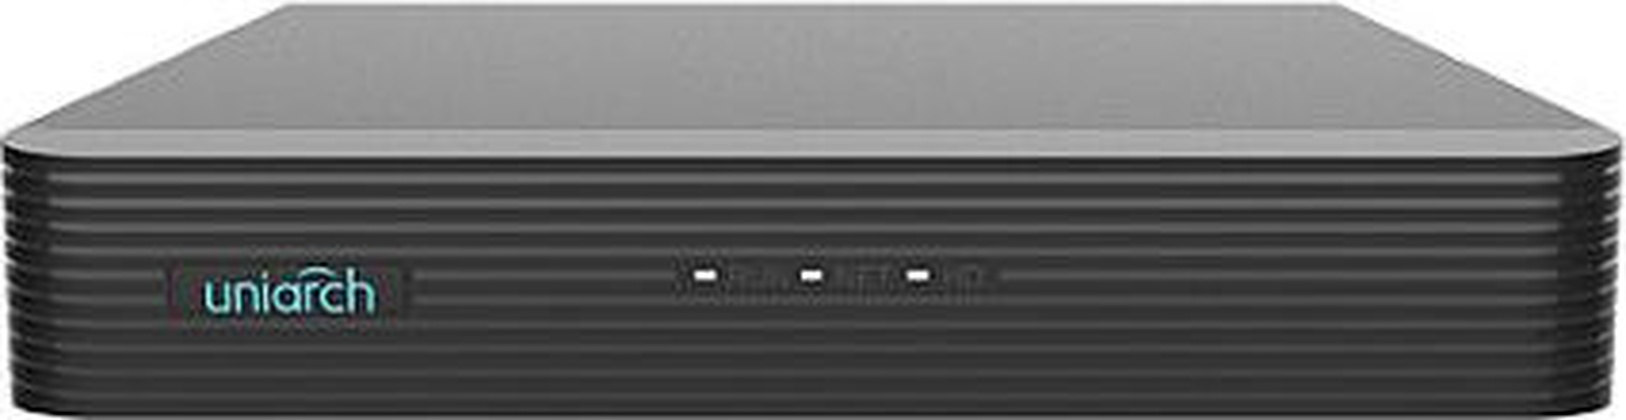 Видеорегистратор 8-канальный "Uniarch" [NVR-108E2-P8], 2USB, RJ45,1xVGA, 1xHDMI